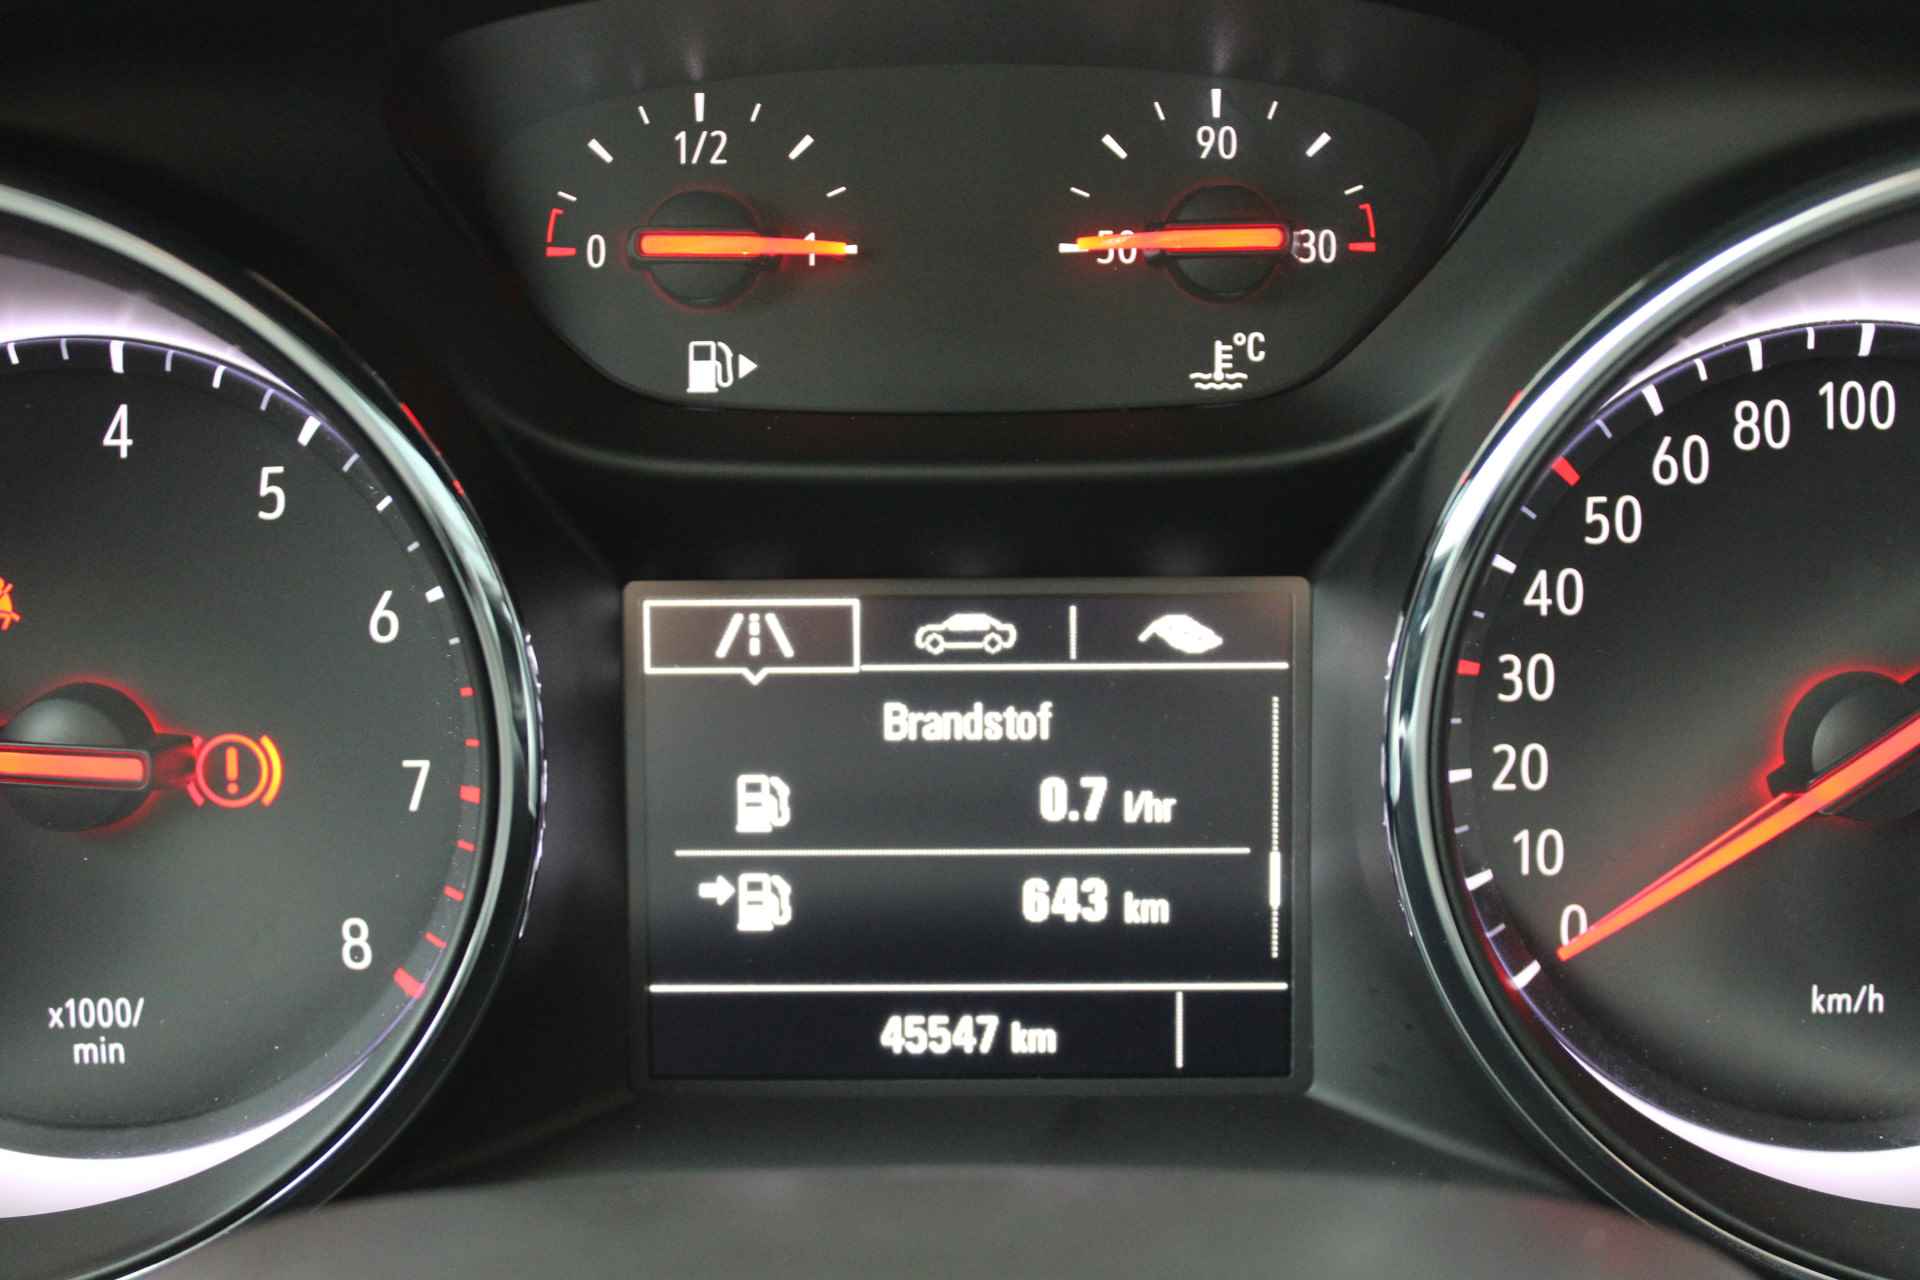 Opel Astra 1.2 T 110 pk 5drs Edition / Navigatie / Parkeersensoren / Airco / Cruise Control / Carplay / '' vraag een vrijblijvende offerte aan '' - 7/26